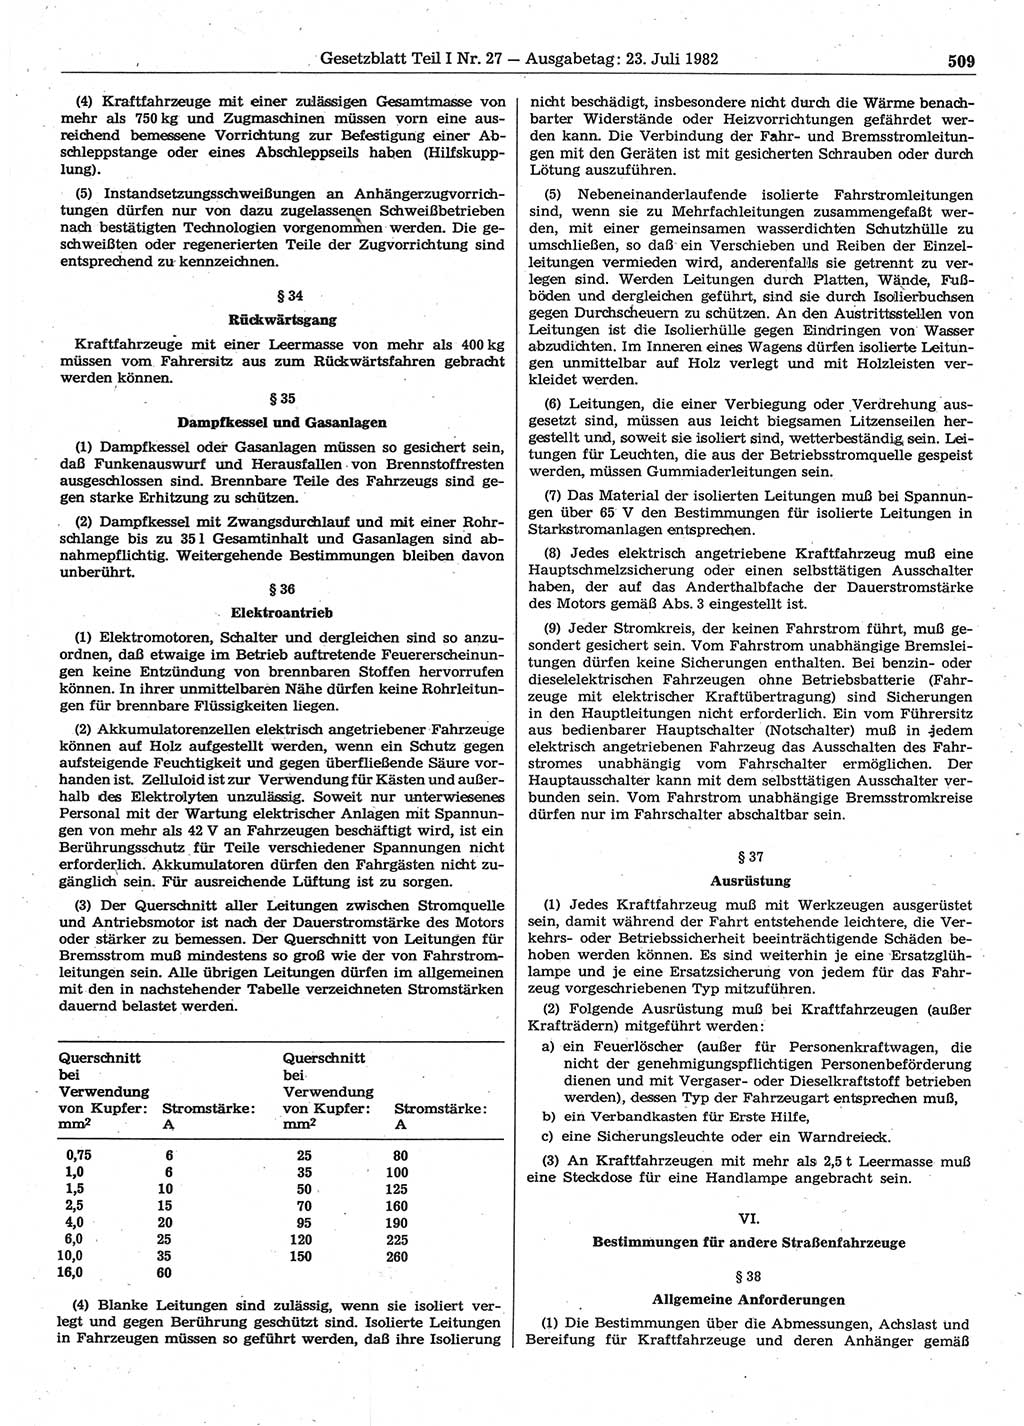 Gesetzblatt (GBl.) der Deutschen Demokratischen Republik (DDR) Teil Ⅰ 1982, Seite 509 (GBl. DDR Ⅰ 1982, S. 509)